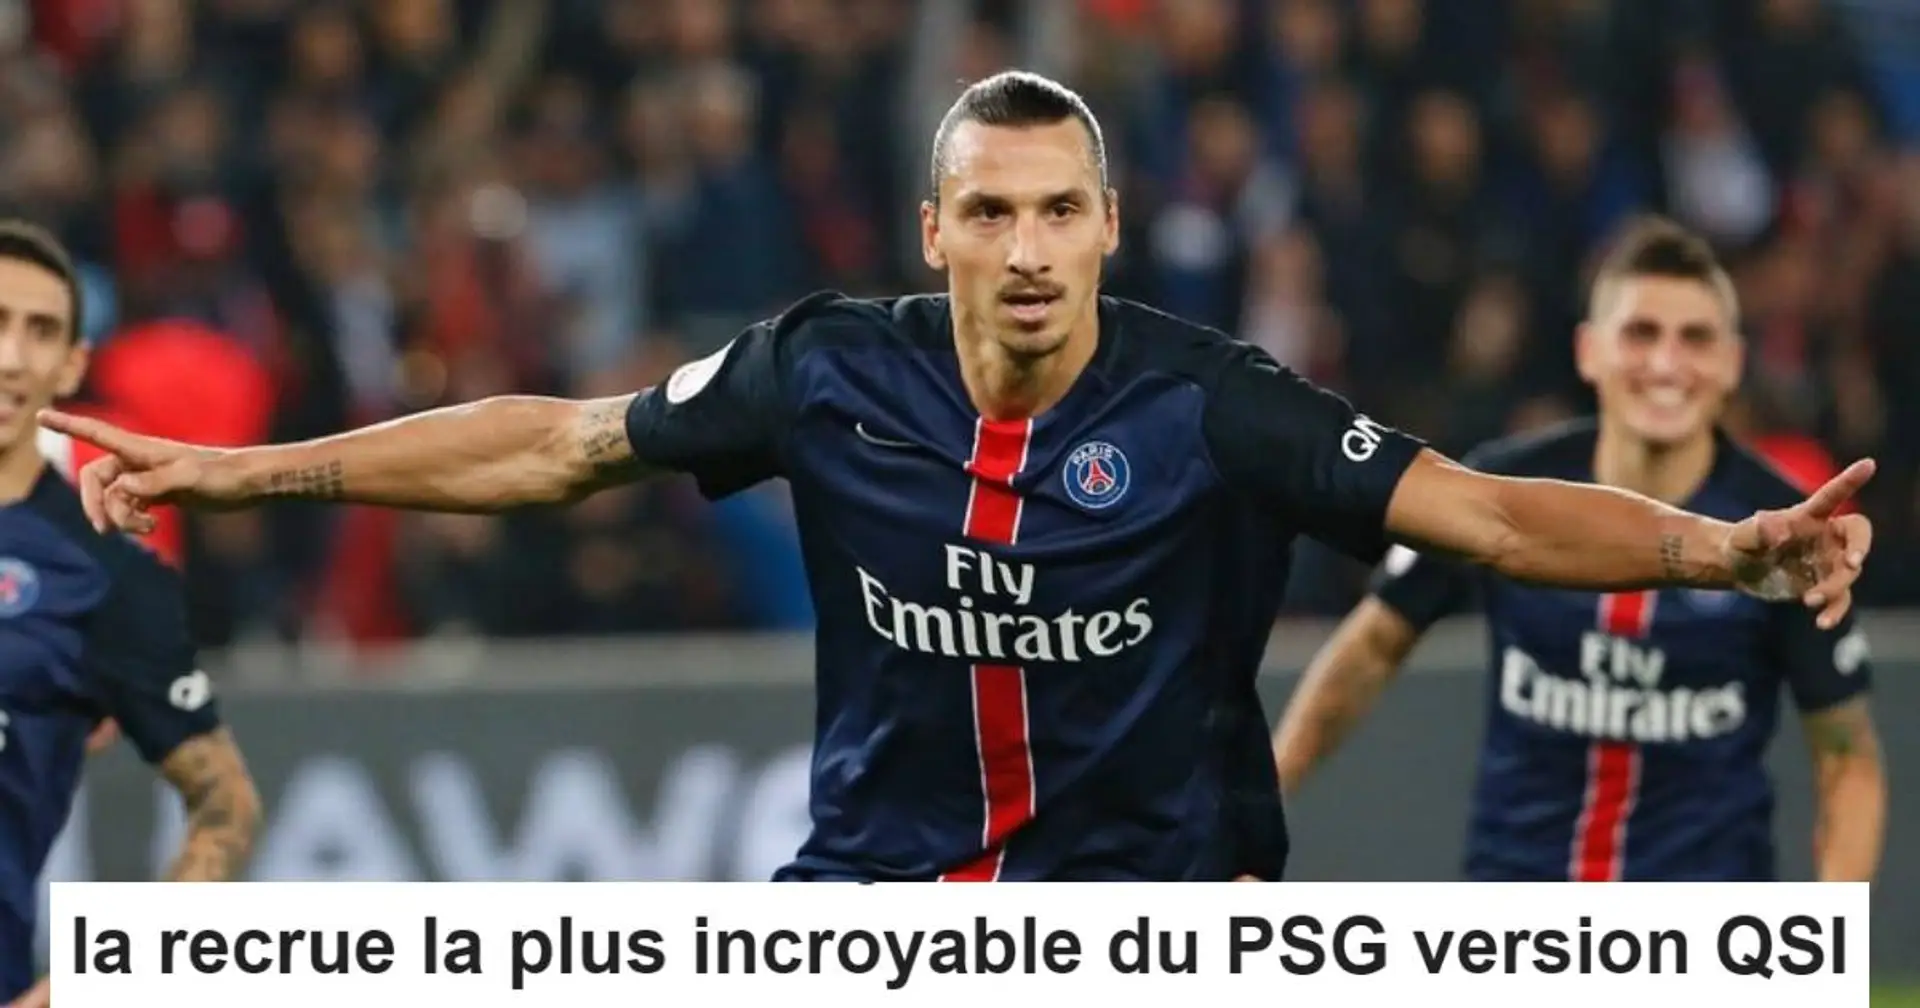 "A fait passer le PSG dans un autre dimension" : Les fans rendent hommage à Zlatan Ibrahimovic